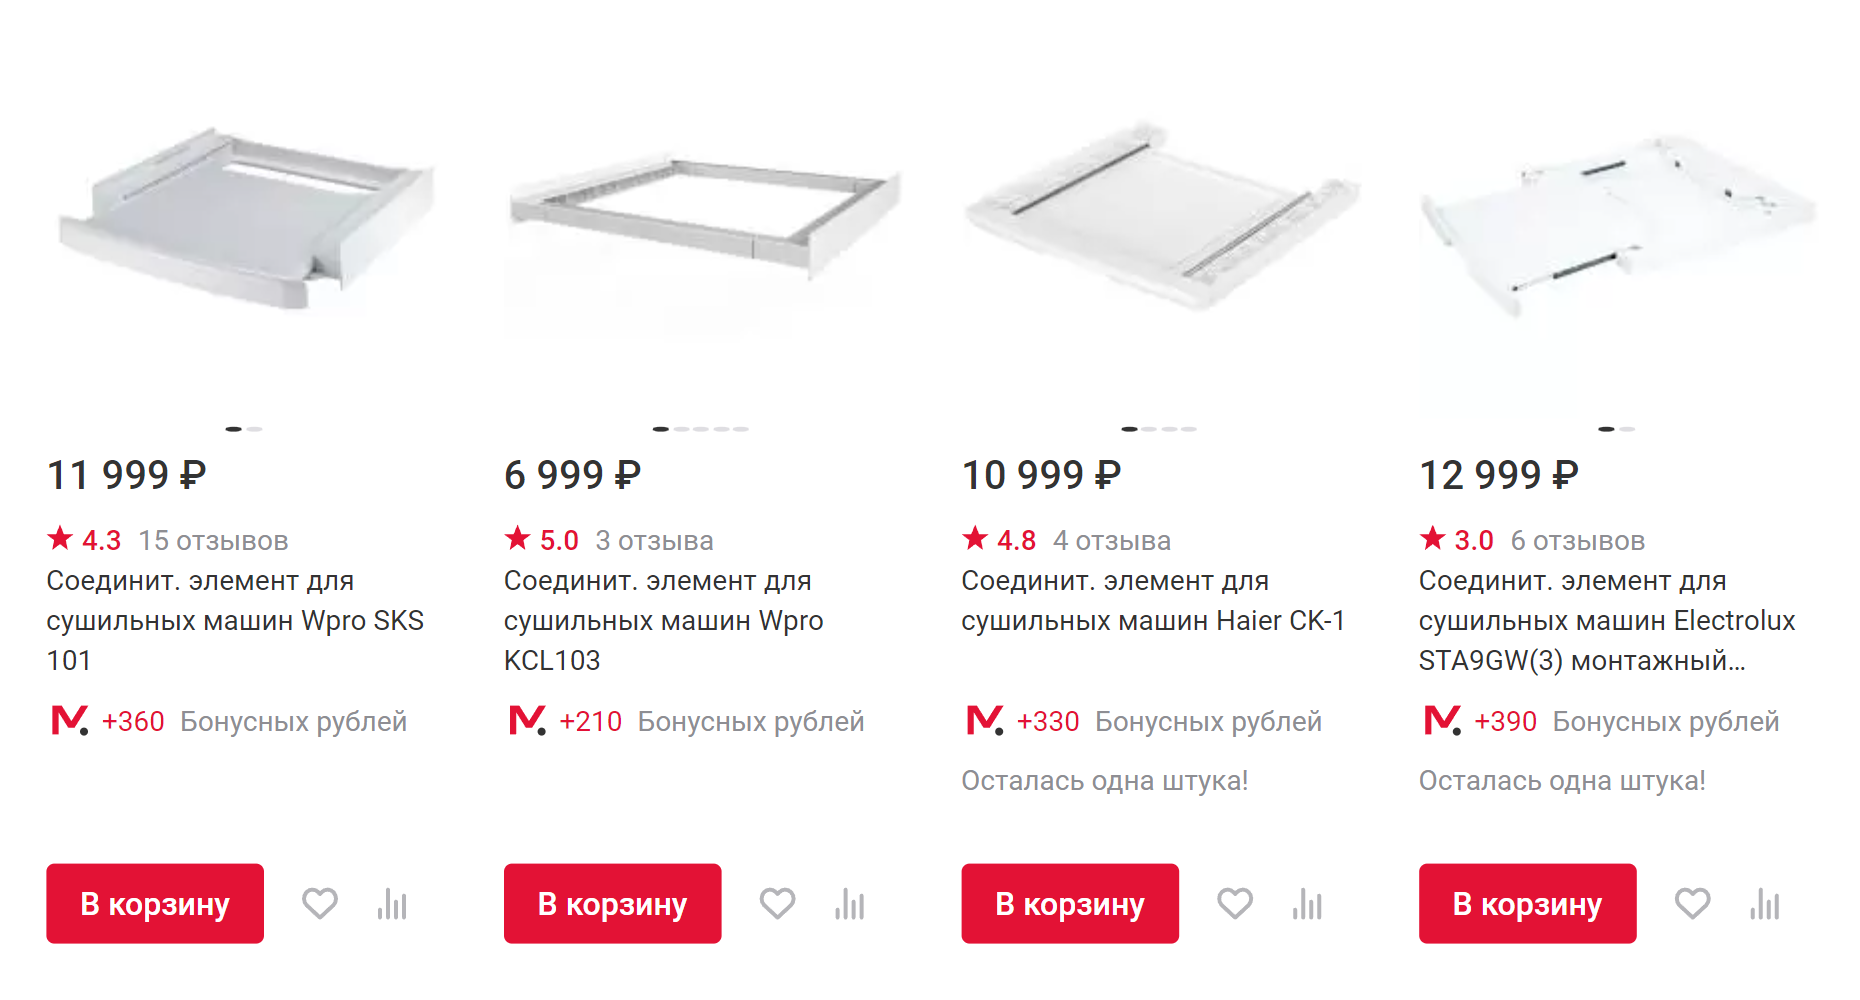 Так выглядят соединительные элементы для стиральных и сушильных машин. В последнее время цены на эти устройства резко выросли. Источник: mvideo.ru